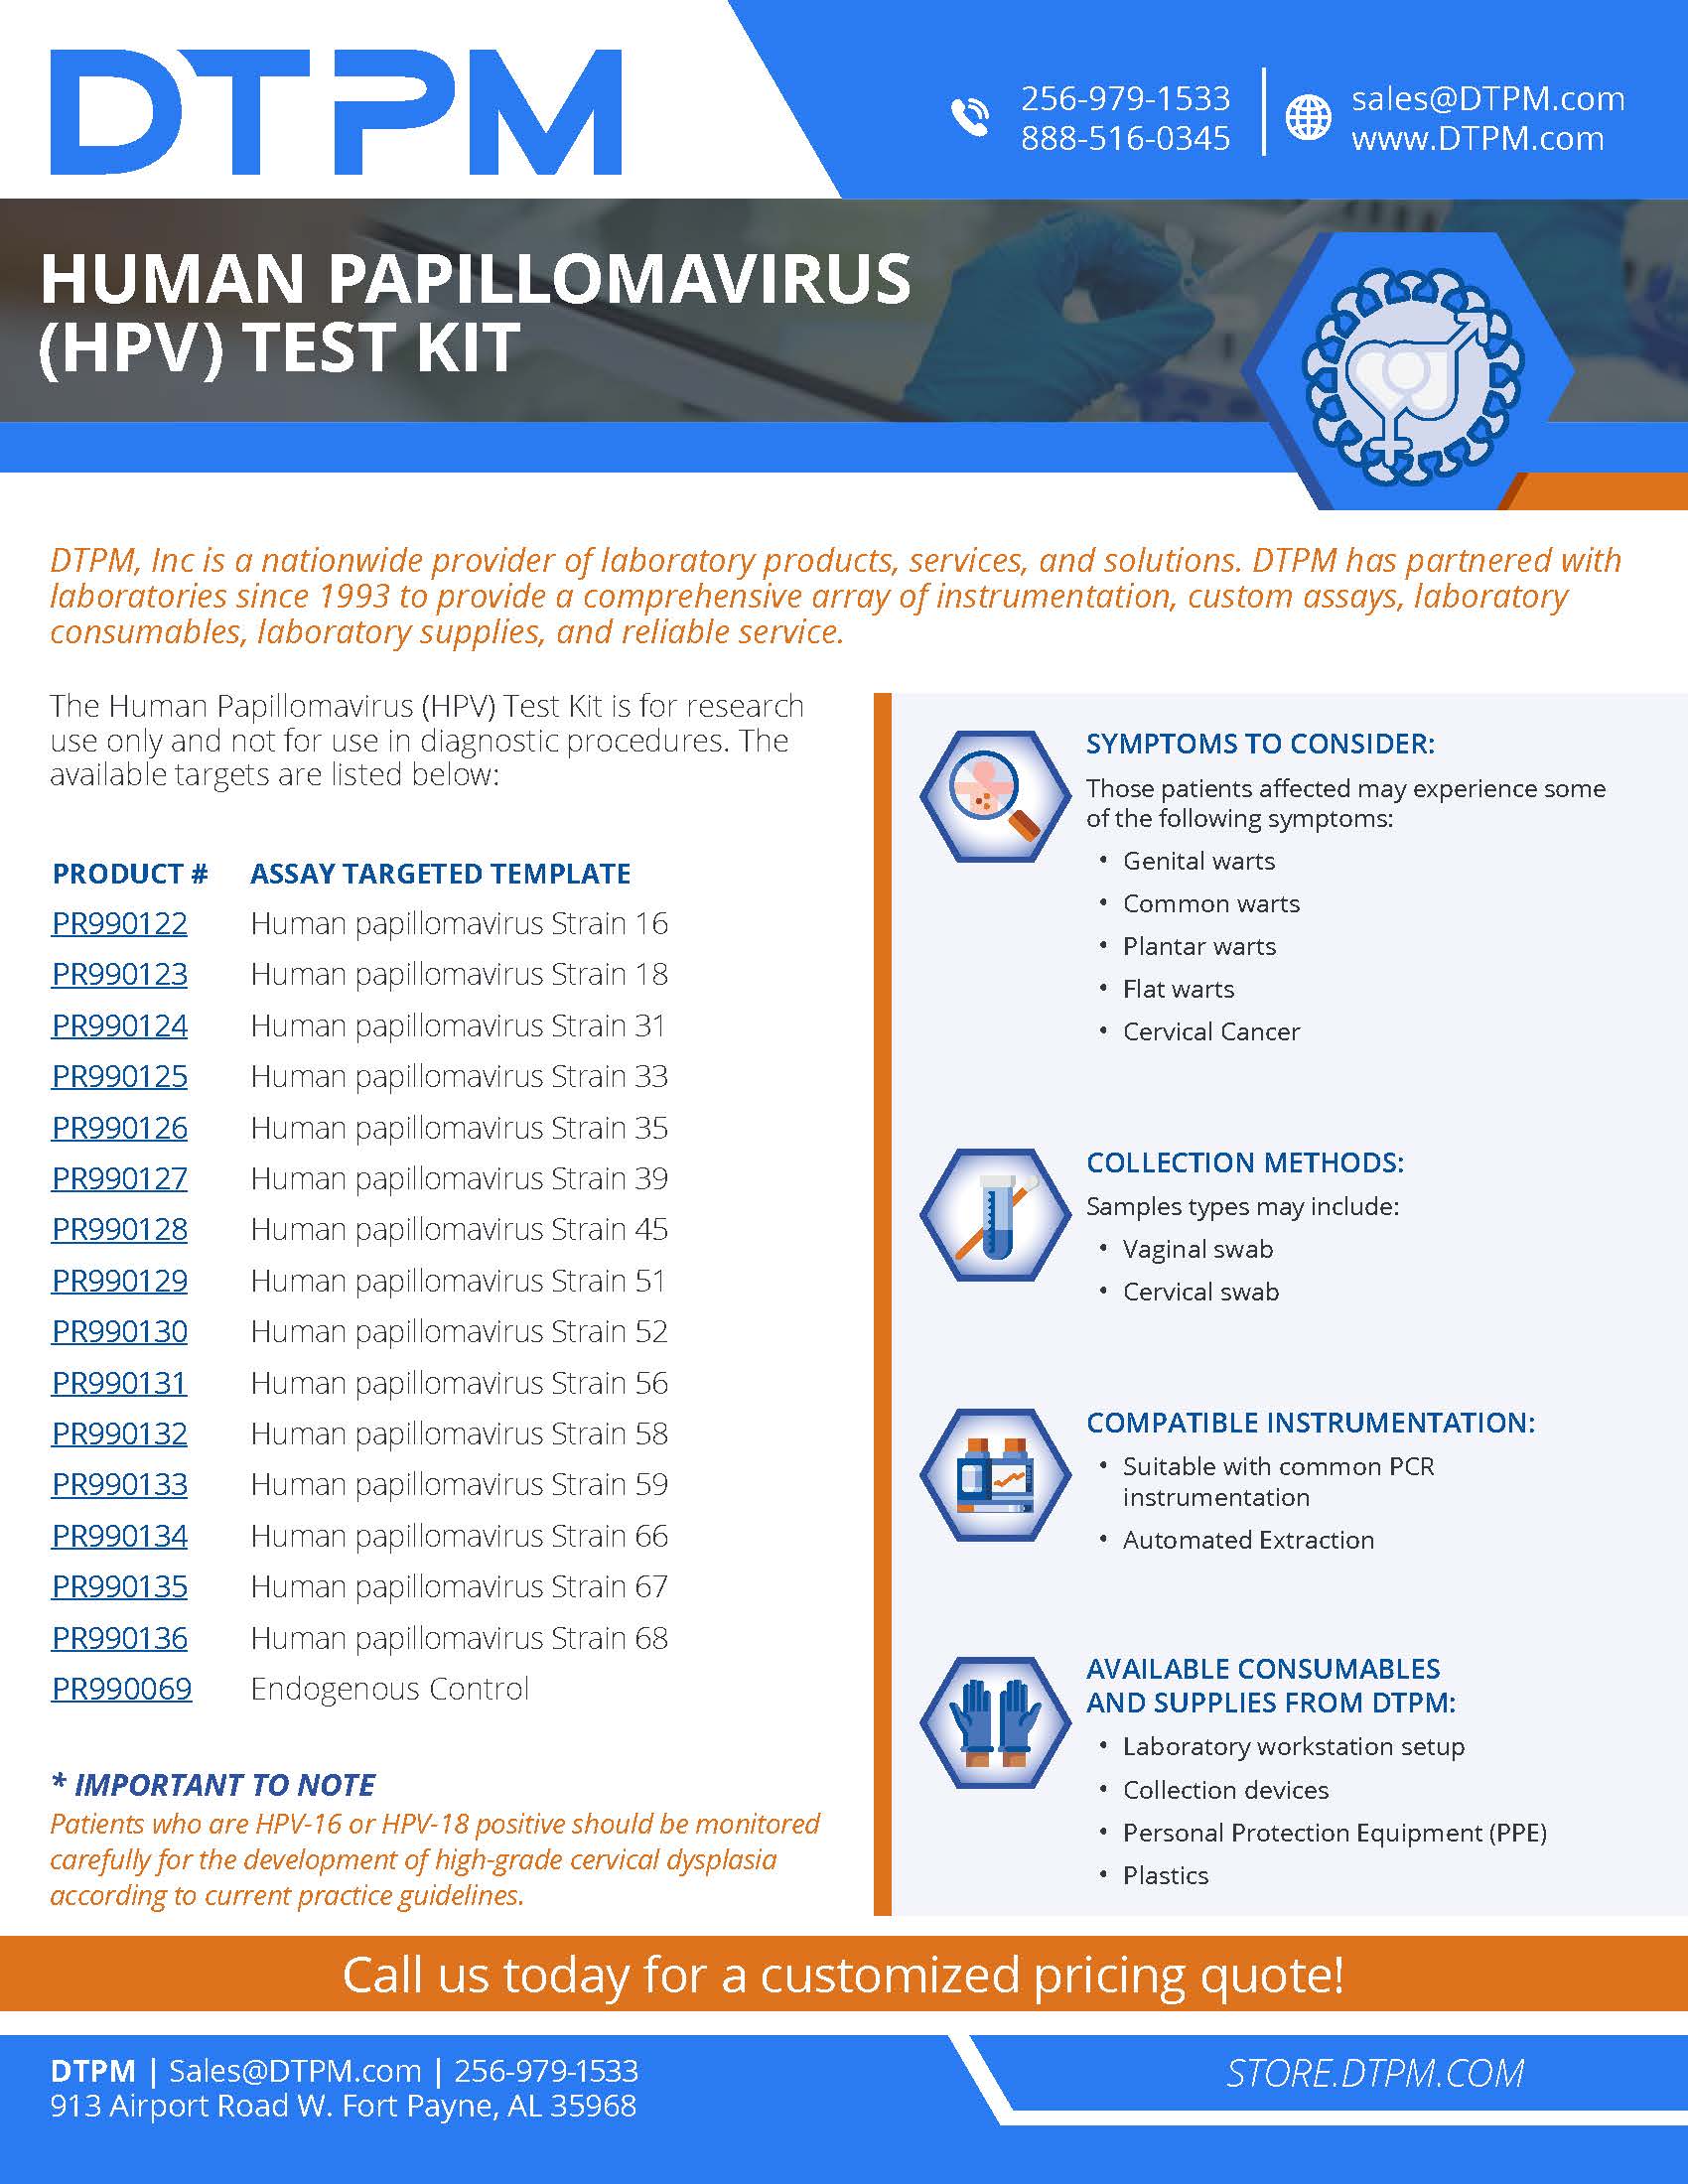 DTPM HPV Test Kit